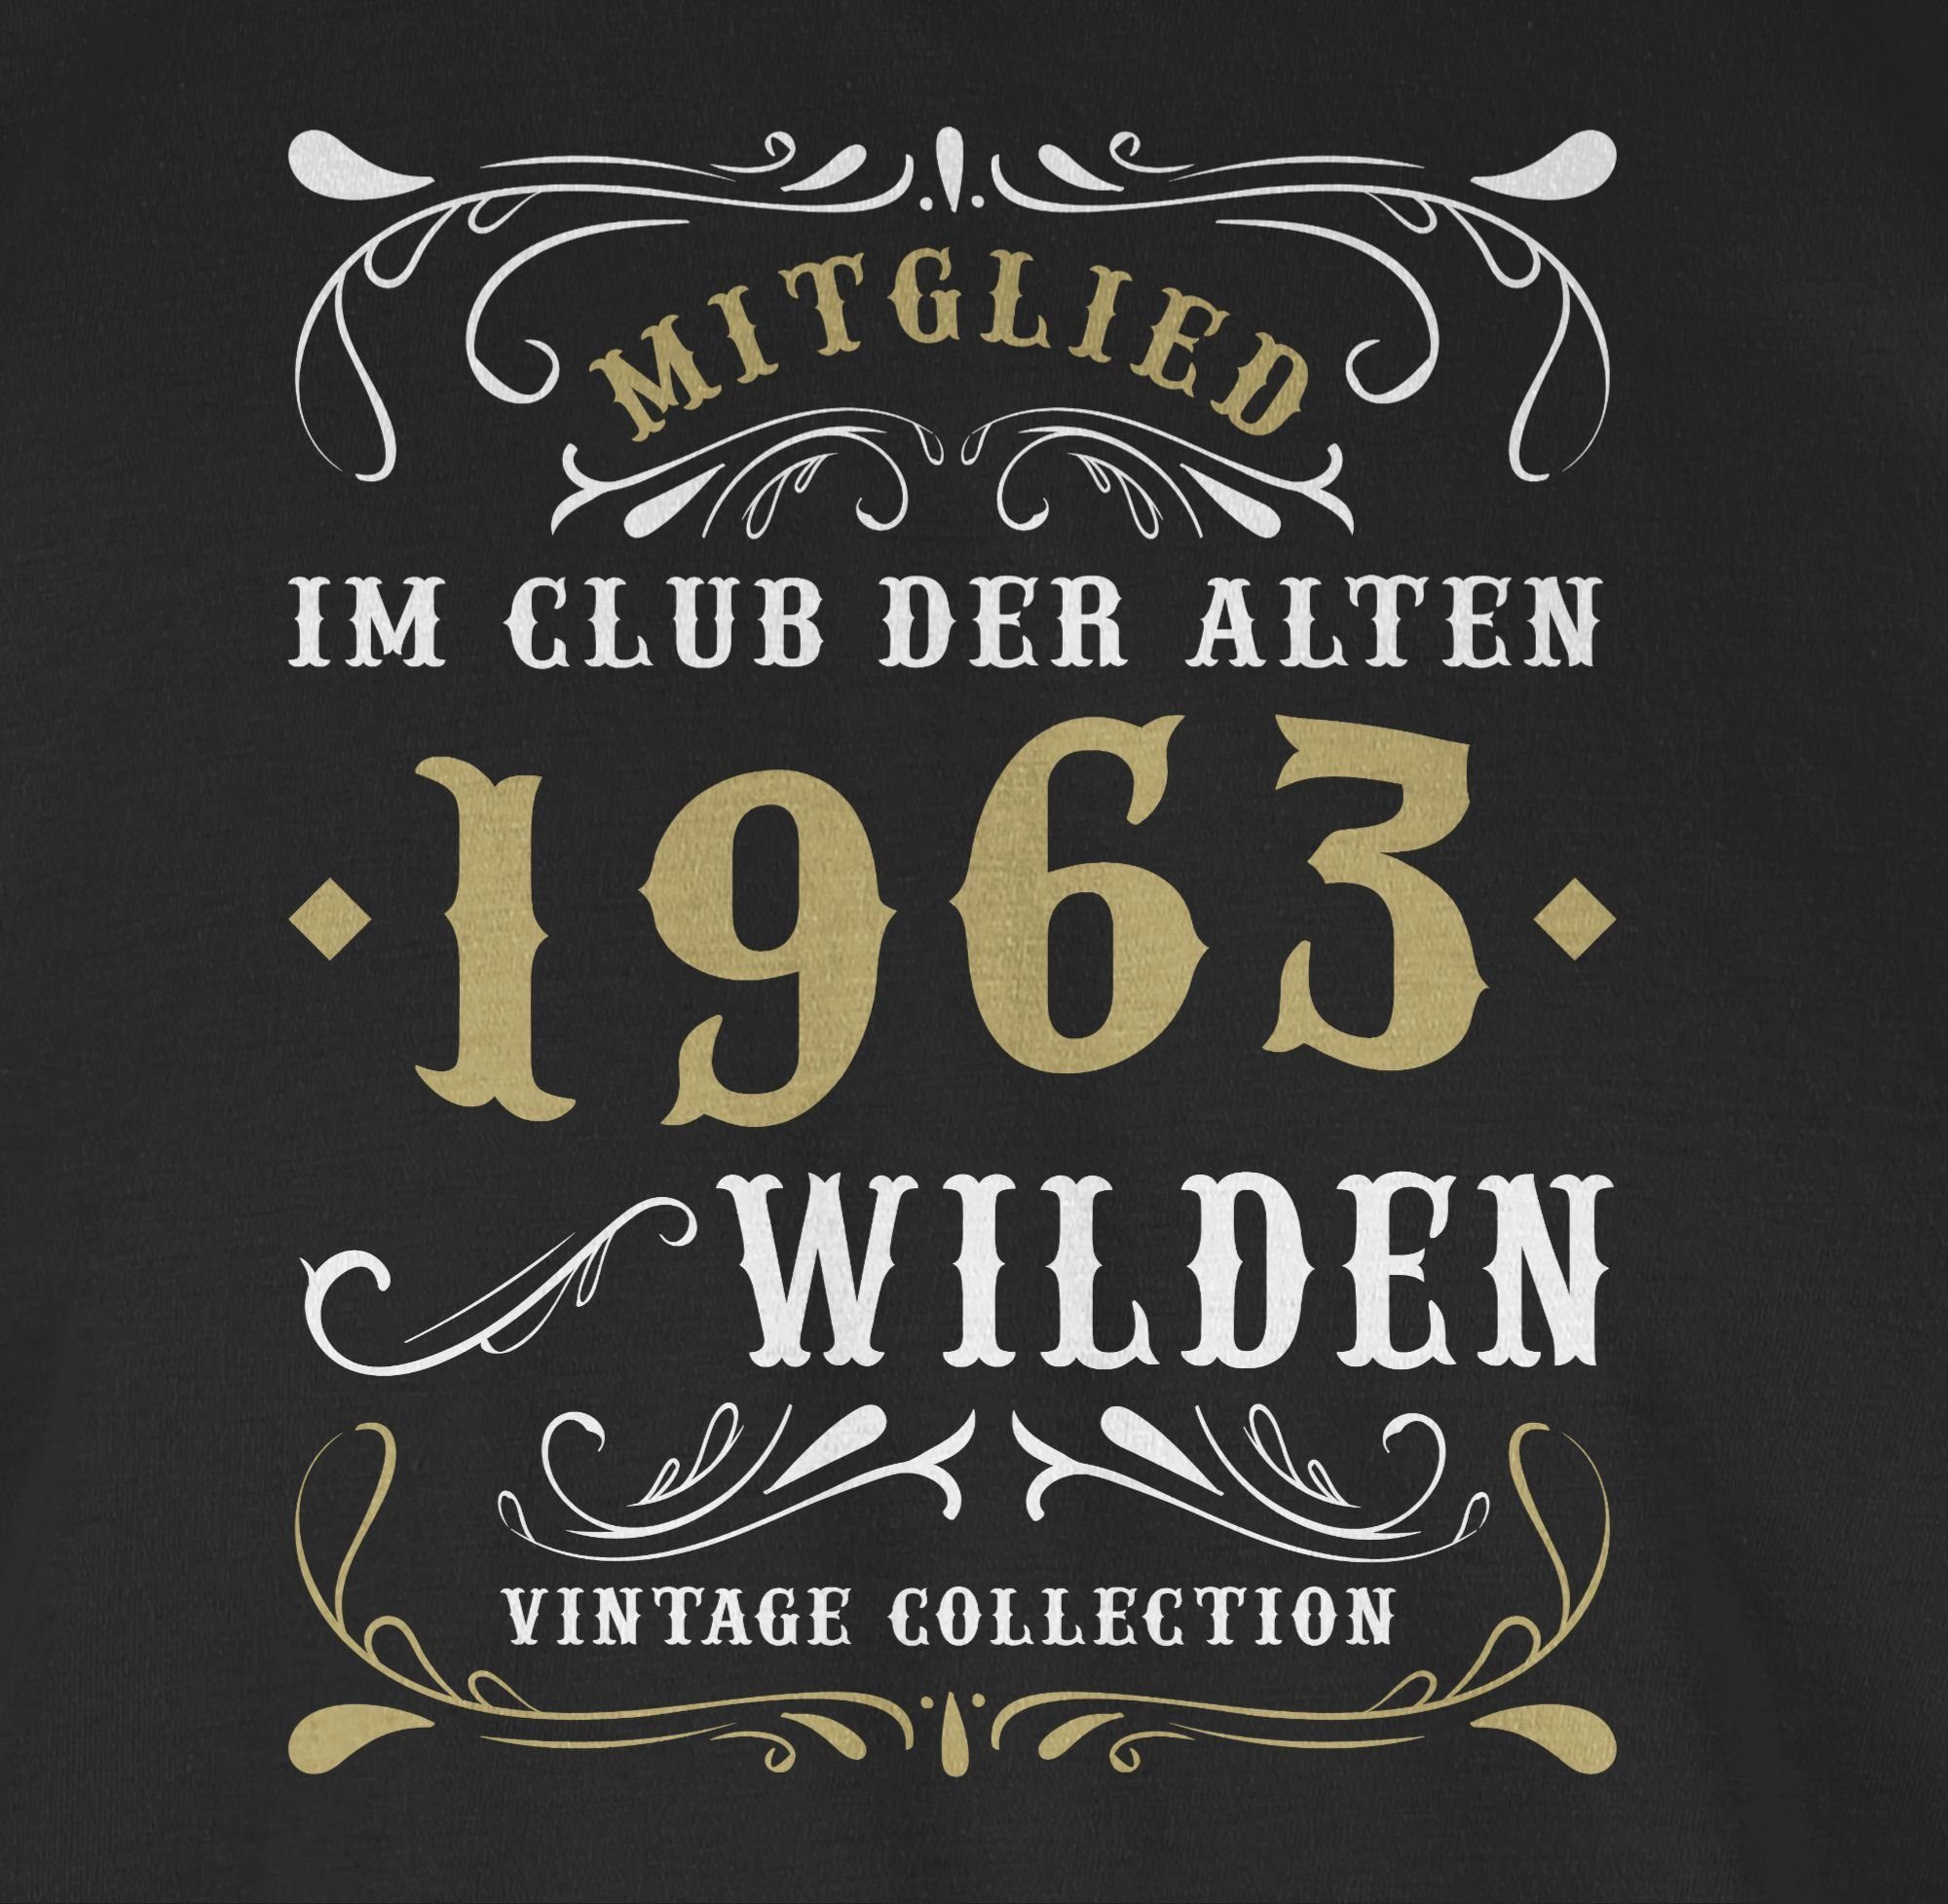 im Schwarz Wilden der 1 alten Shirtracer 60. Geburtstag 1963 Mitglied T-Shirt Club